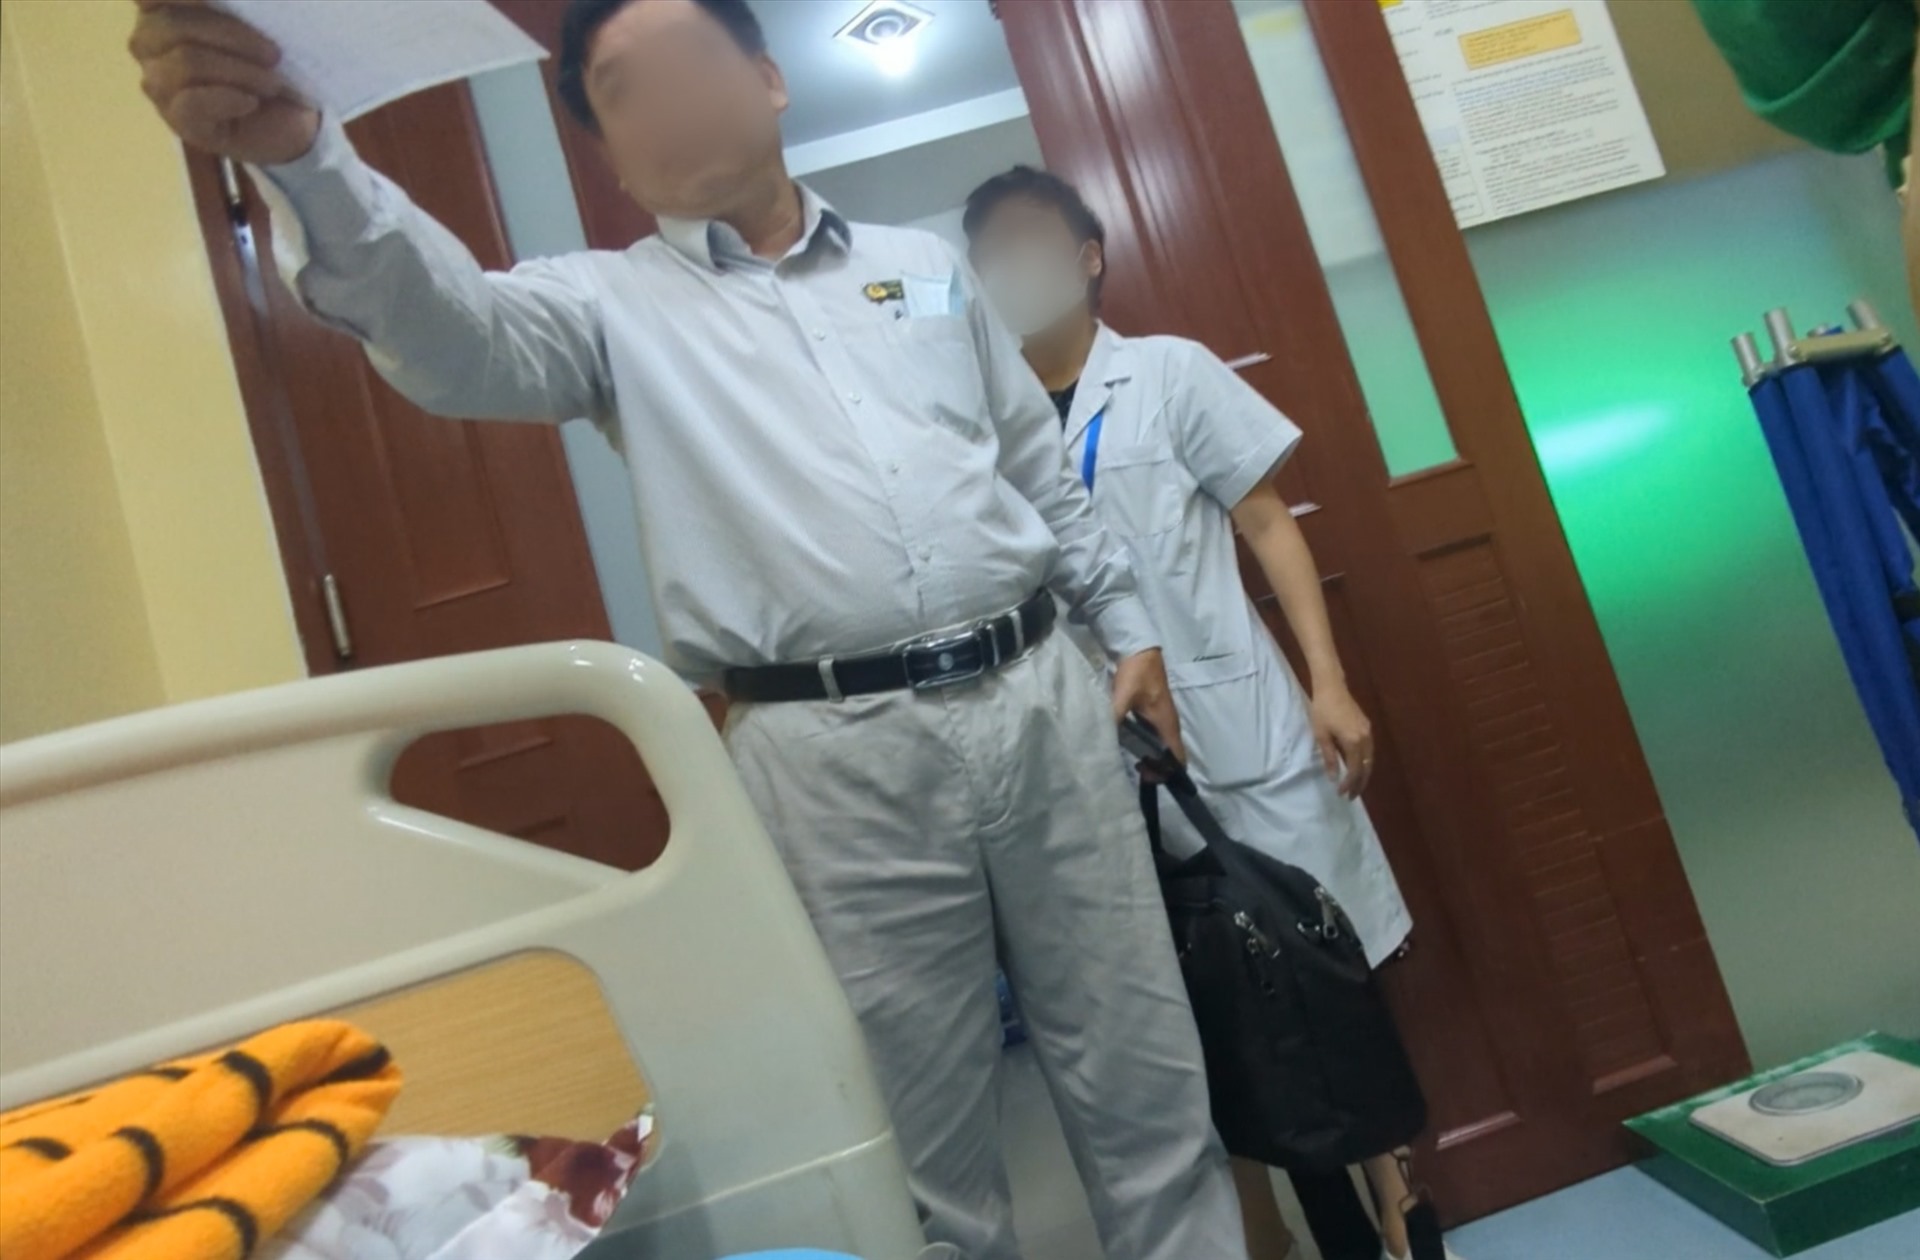 Thanh tra Sở Y tế đến kiểm tra sai phạm tại Phòng khám sau khi nhận phản ánh từ PV Báo Lao Động. Ảnh: PV